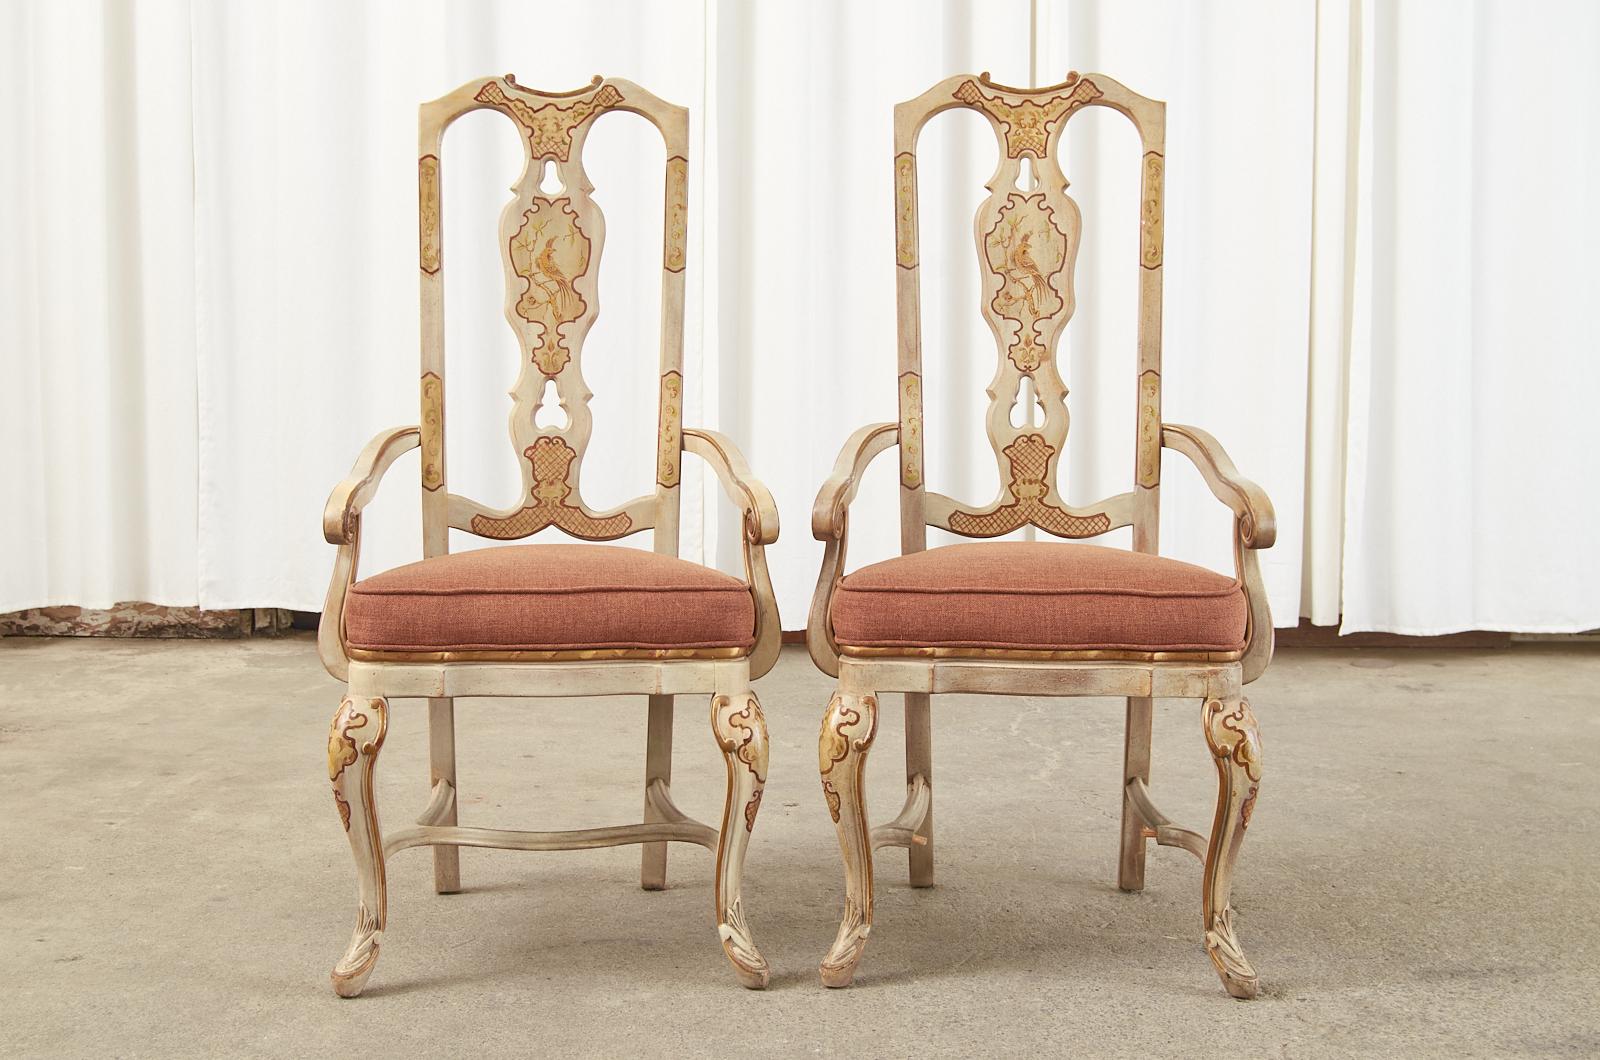 Lackierter Satz von acht Esszimmerstühlen im englischen Queen-Anne-Stil mit Chinoiserie-Verzierungen. Das Set besteht aus zwei Sesseln mit einer Breite von 22 Zoll und sechs Beistellstühlen. Die Hartholz-Stuhlgestelle haben eine Paketvergoldung und